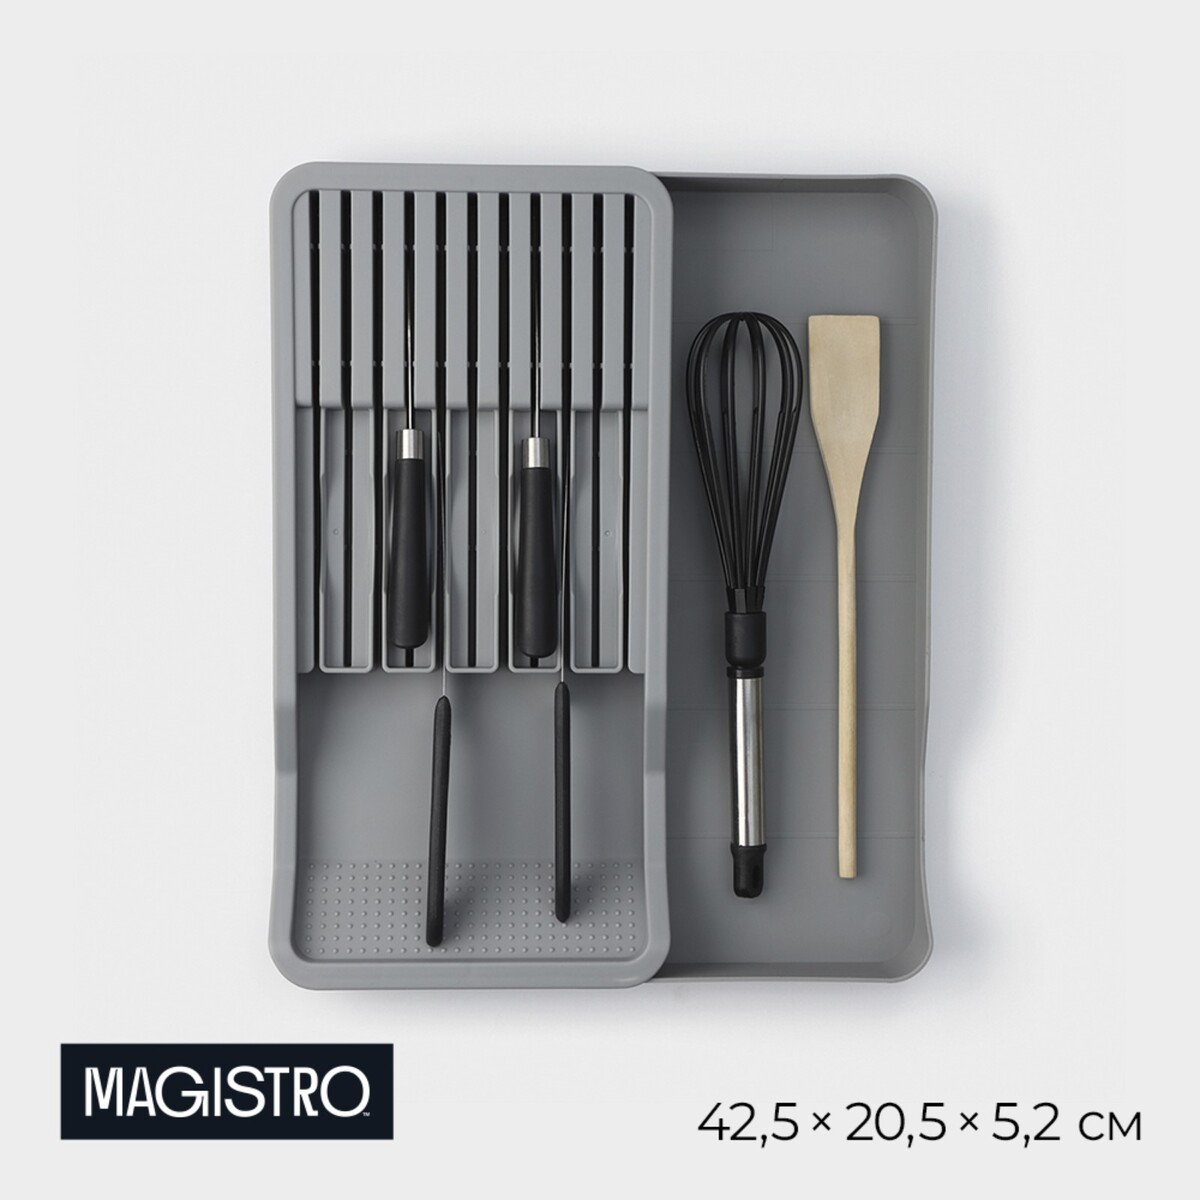 Подставка для кухонных приборов magistro harm, 42,5×20,5×5,2 см, раздвижная, цвет серый подставка для ножей и столовых приборов magistro harm серый